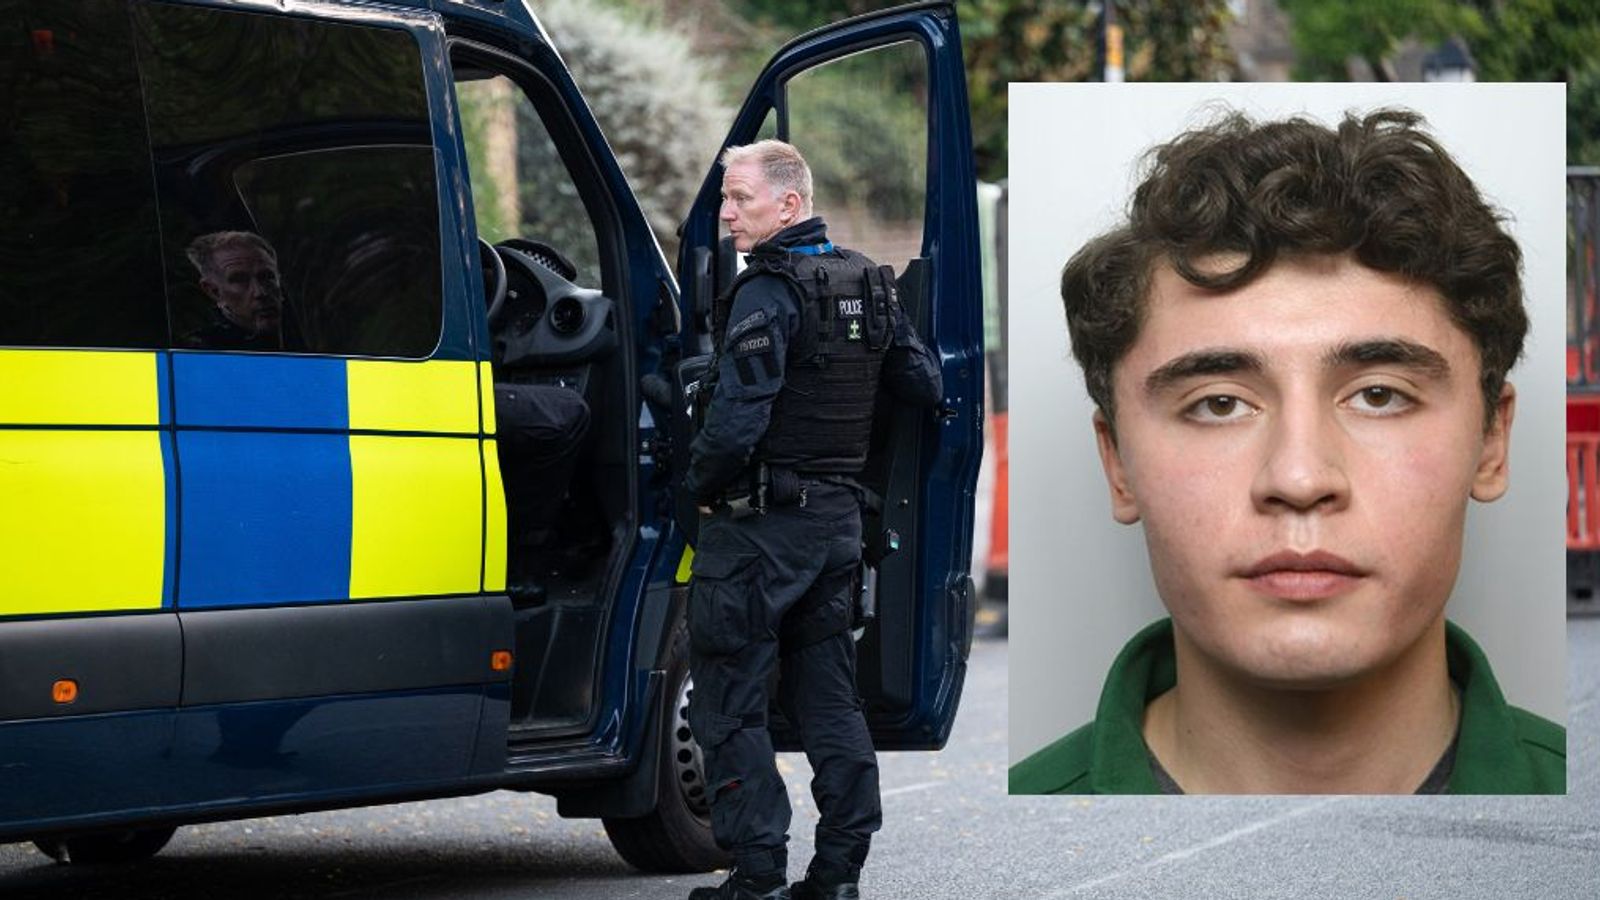 Daniel Khalife manhunt latest: Fugitive pulled off bike by plain-clothes officer, Met says as more arrest details emerge | UK News